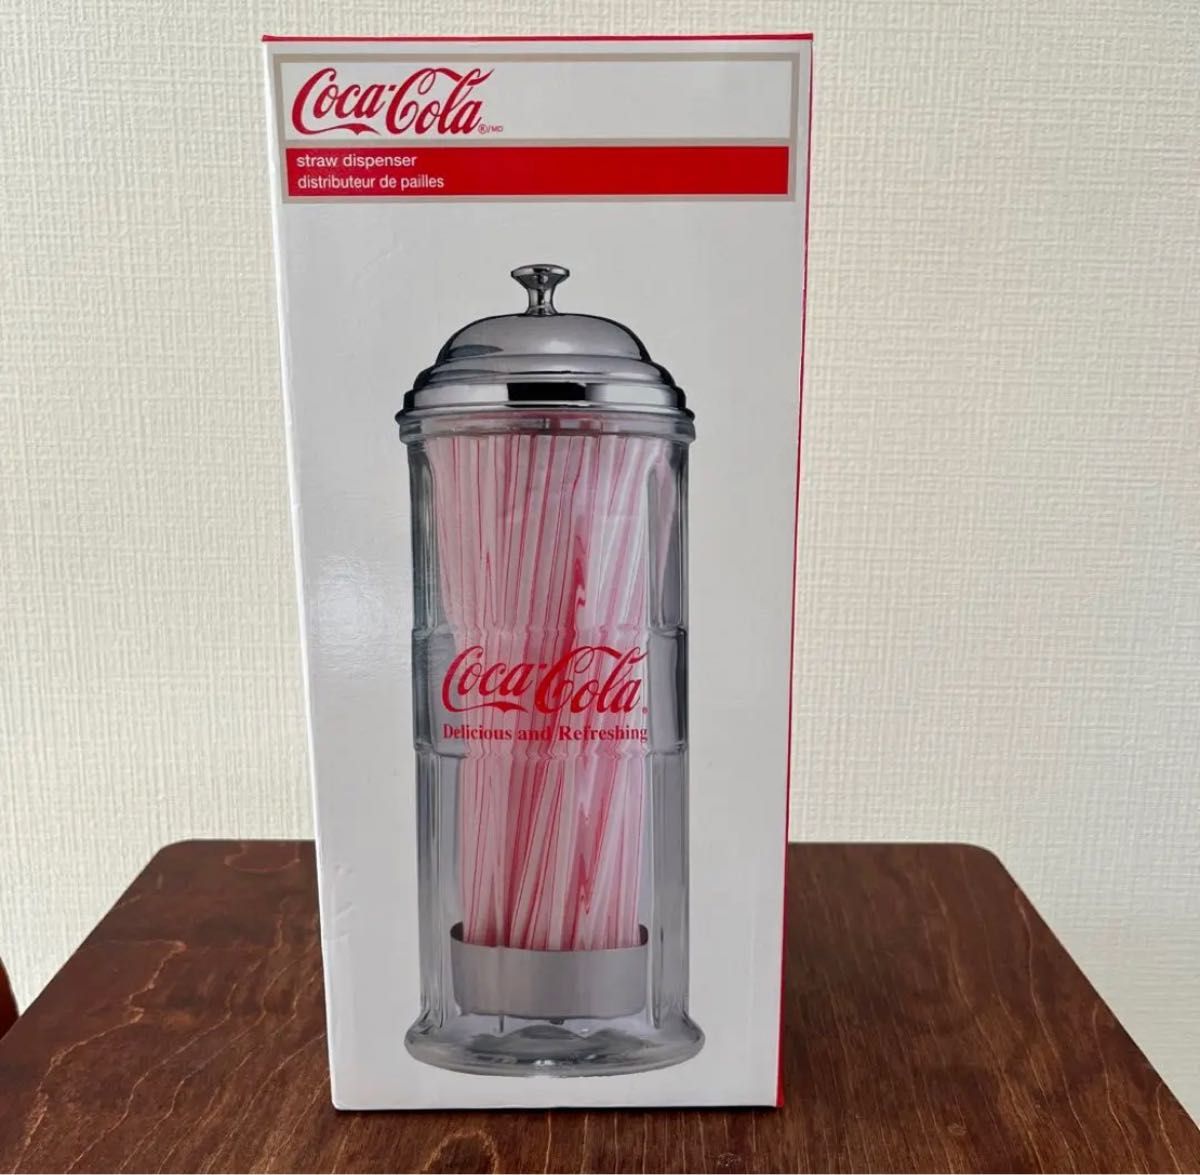 コカ・コーラ ブランド ストローディスペンサー - 使い捨て食器